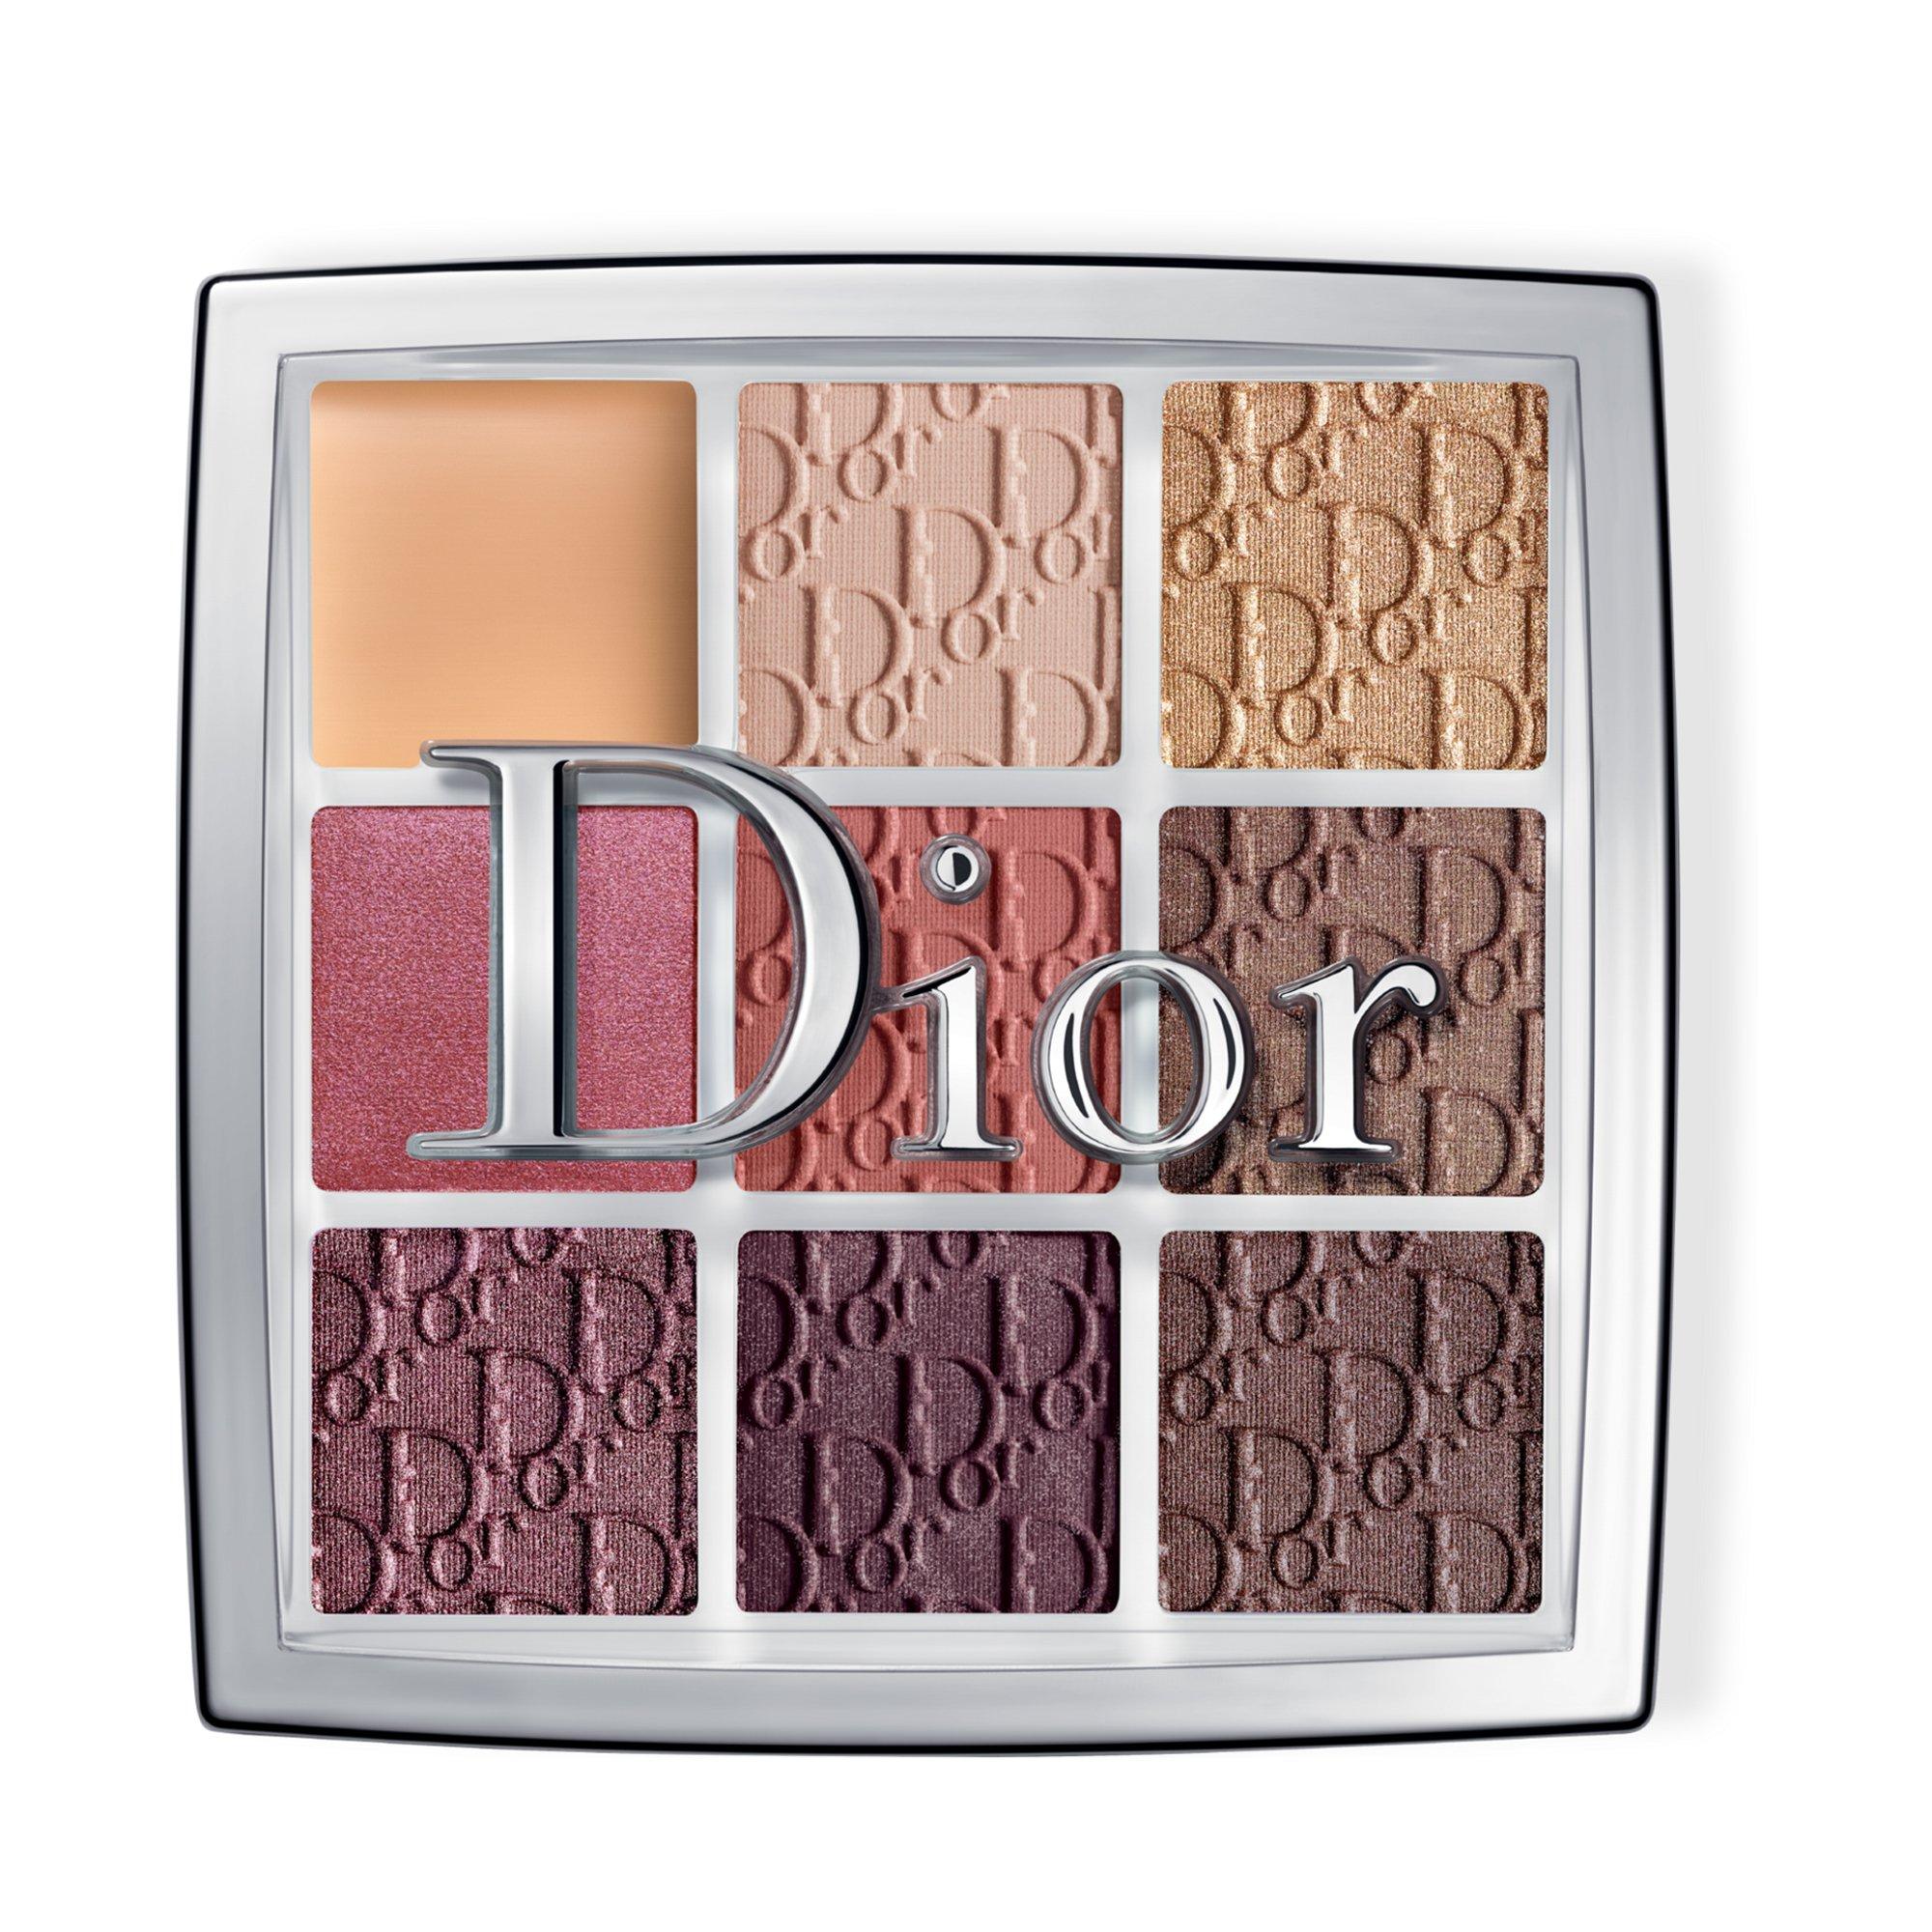 Image of Dior BACKSTAGE Backstage Eye Palette